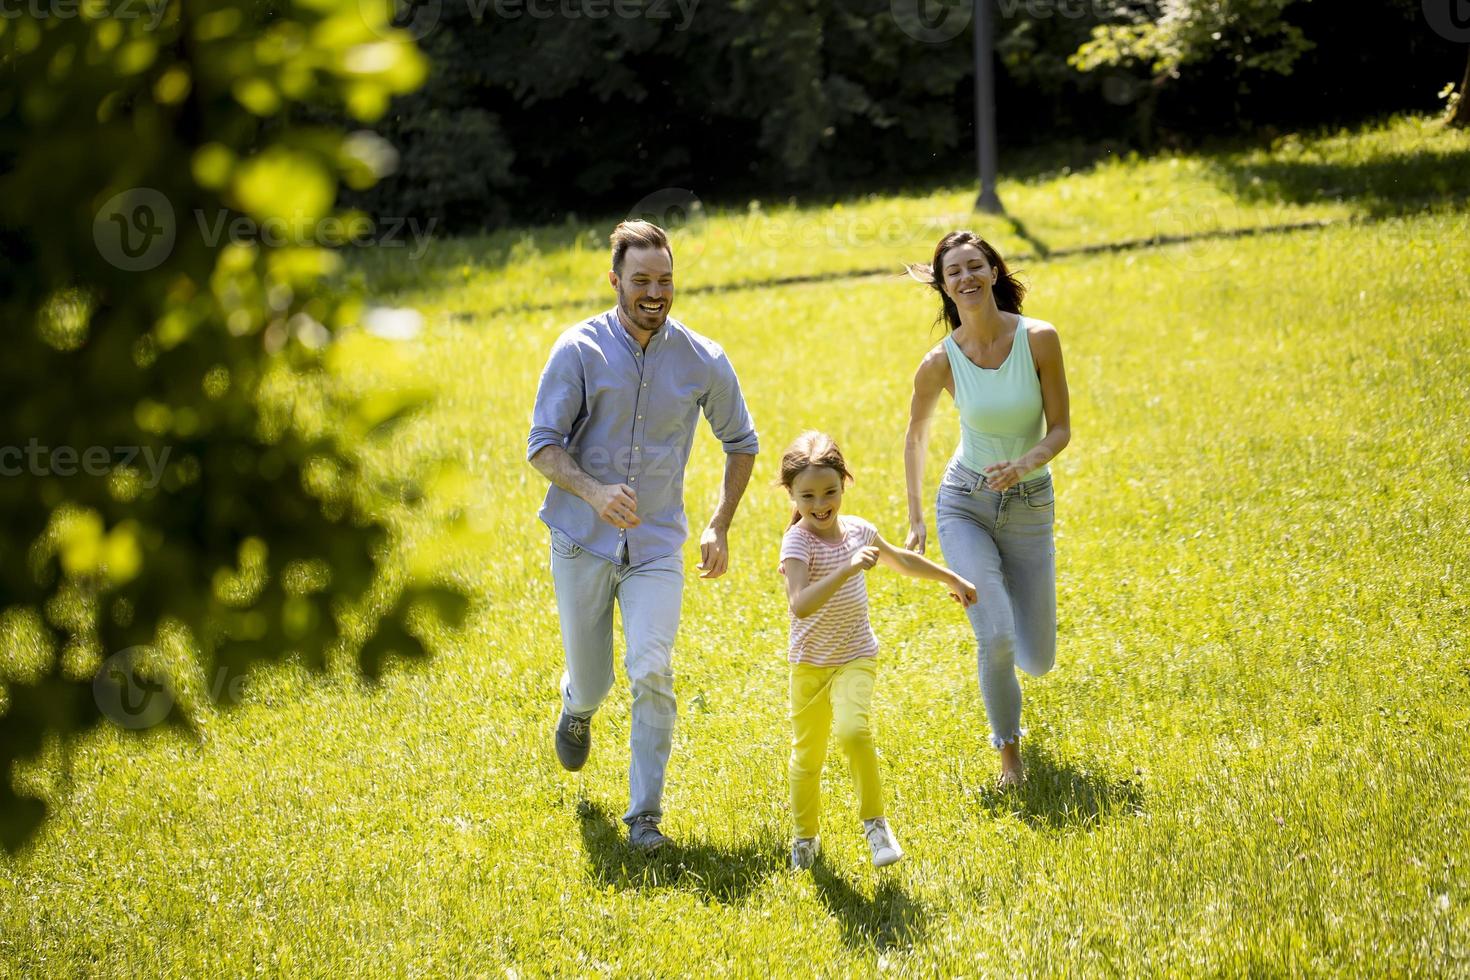 giovane famiglia felice con la piccola figlia carina che corre nel parco in una giornata di sole foto